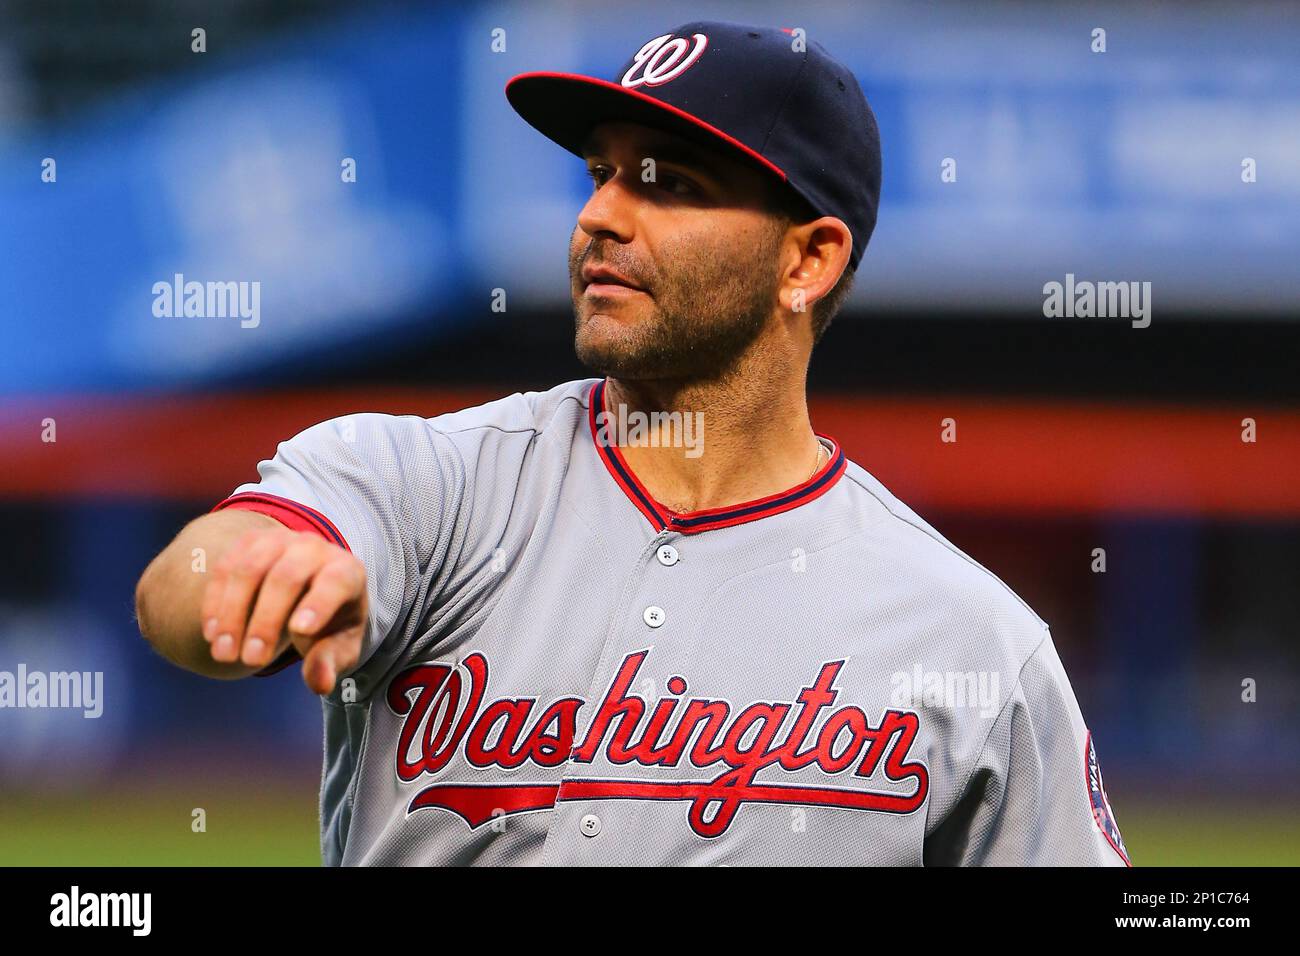 17 MAY 2016: Washington Nationals shortstop Danny Espinosa (8